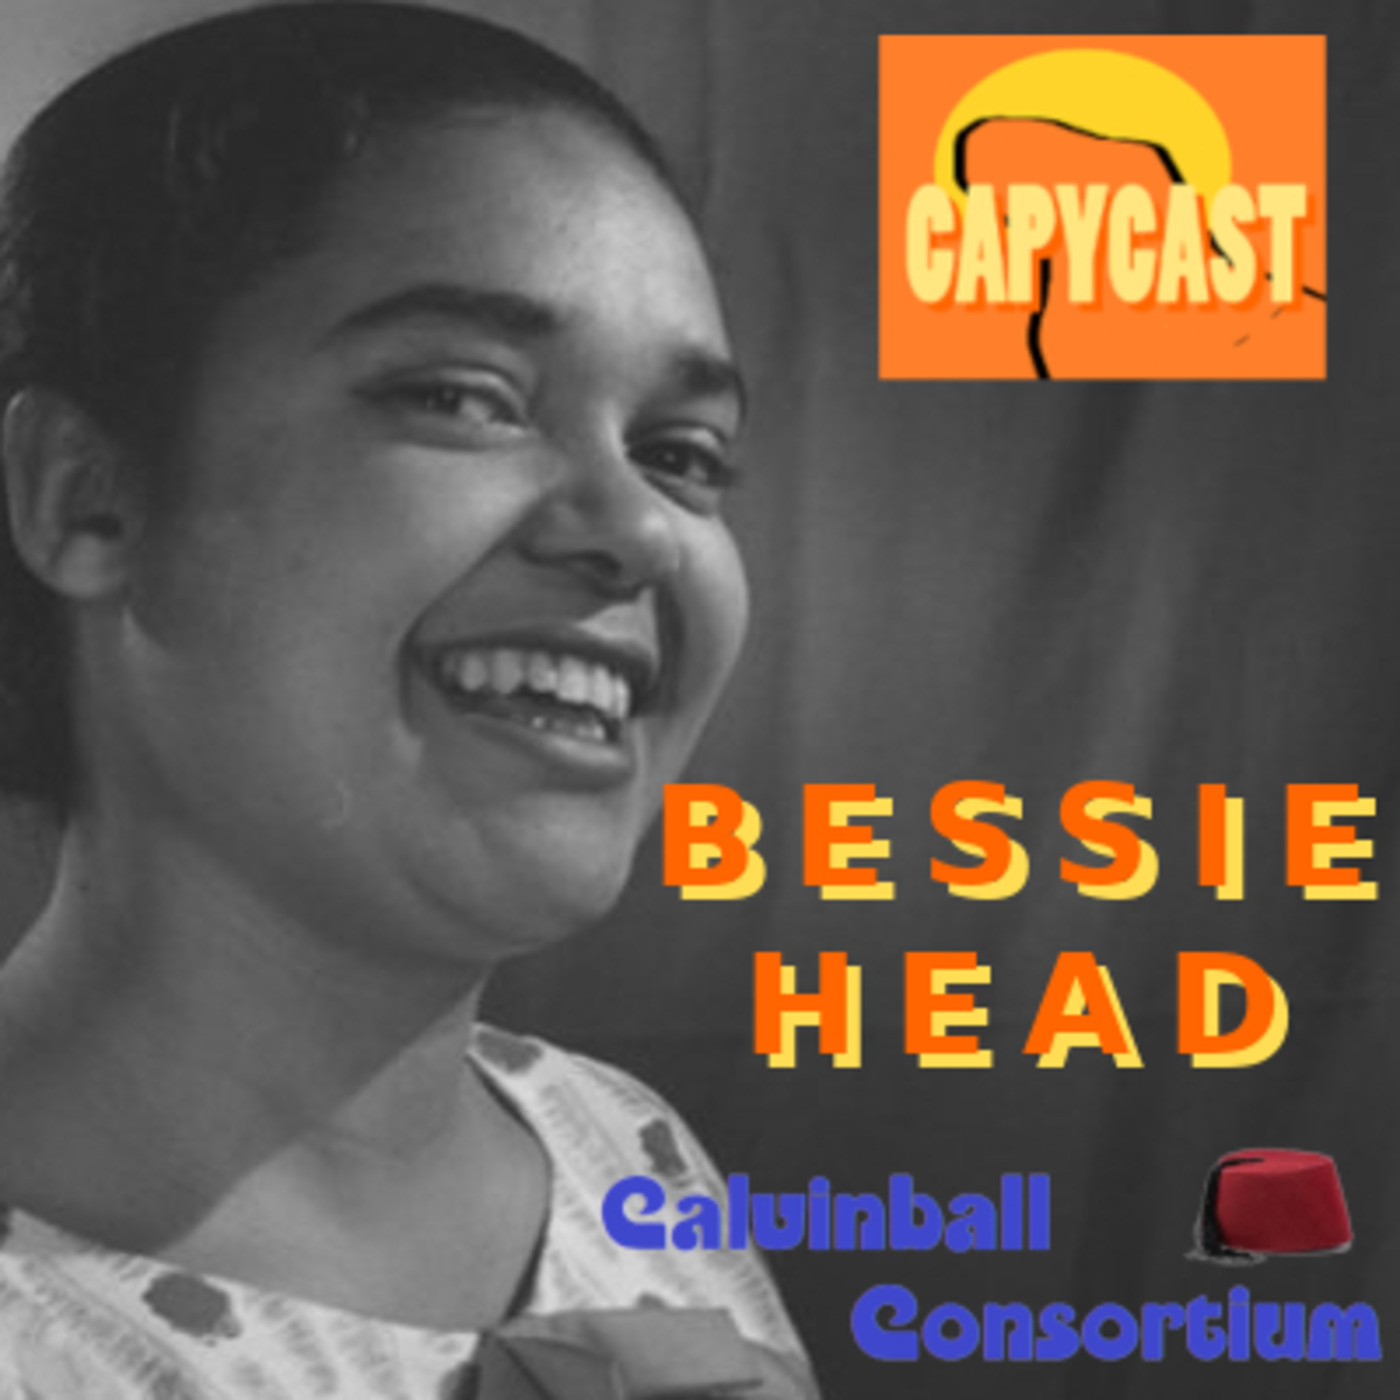 Capycast 11 - Bessie Head